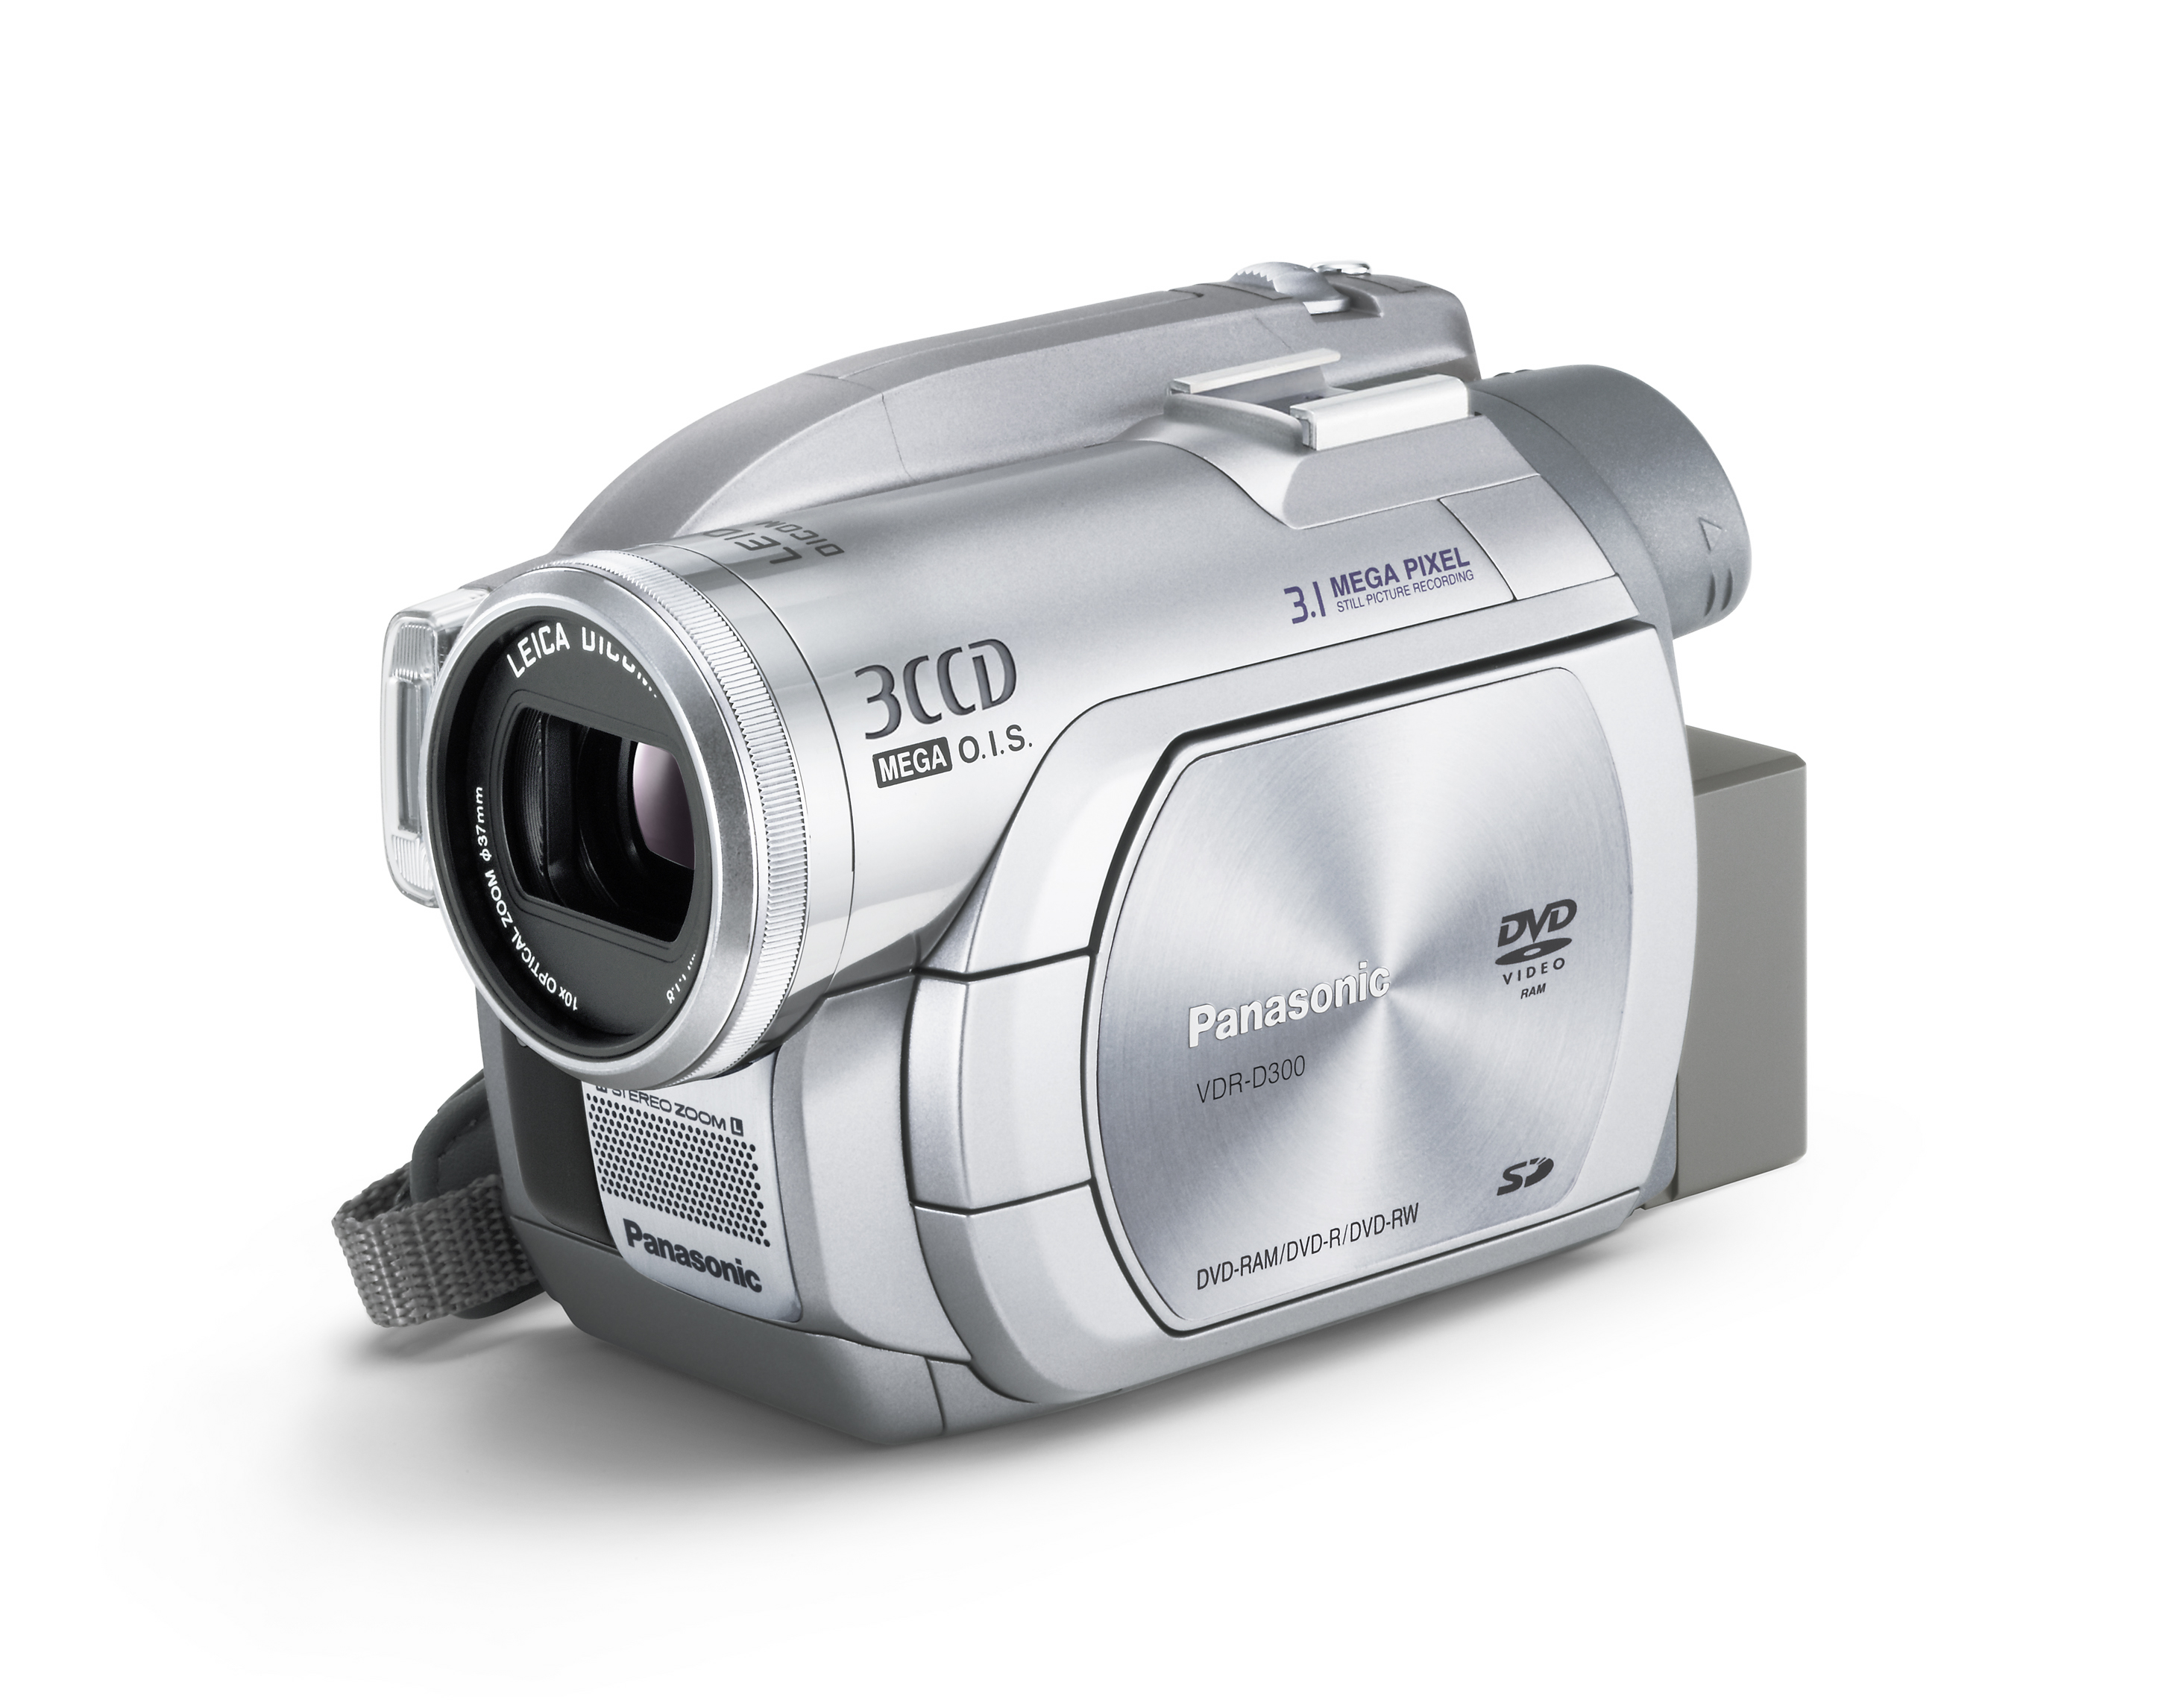 VDR-D300 DVD Videocamara Panasonic Repuestos y accesorios